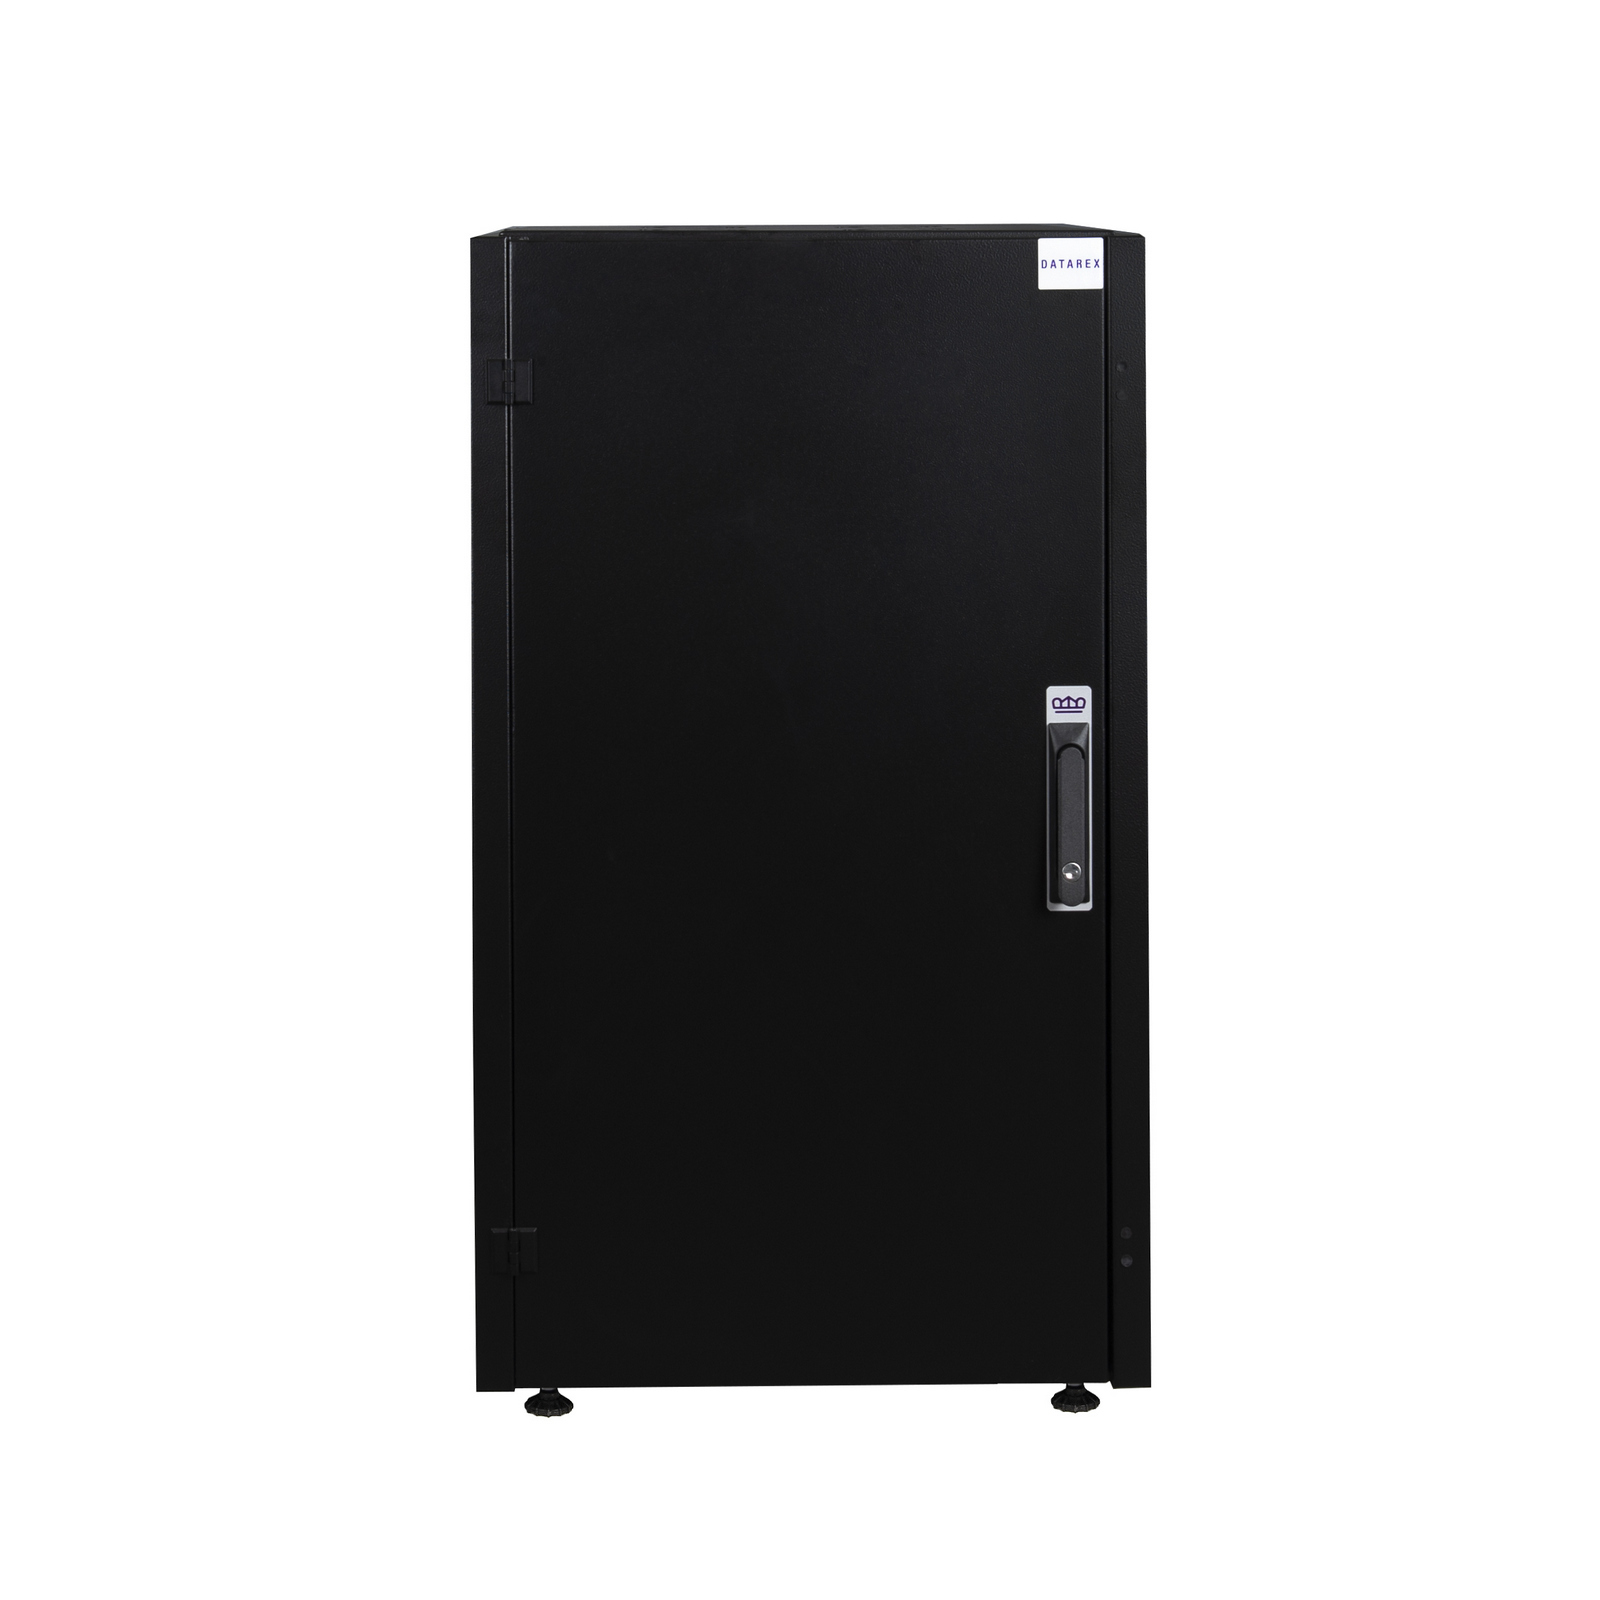 Шкаф телекоммуникационный напольный 22U 600x1000 мм, металл, черный, разборный, Datarex DR-710131 (DR-710131)